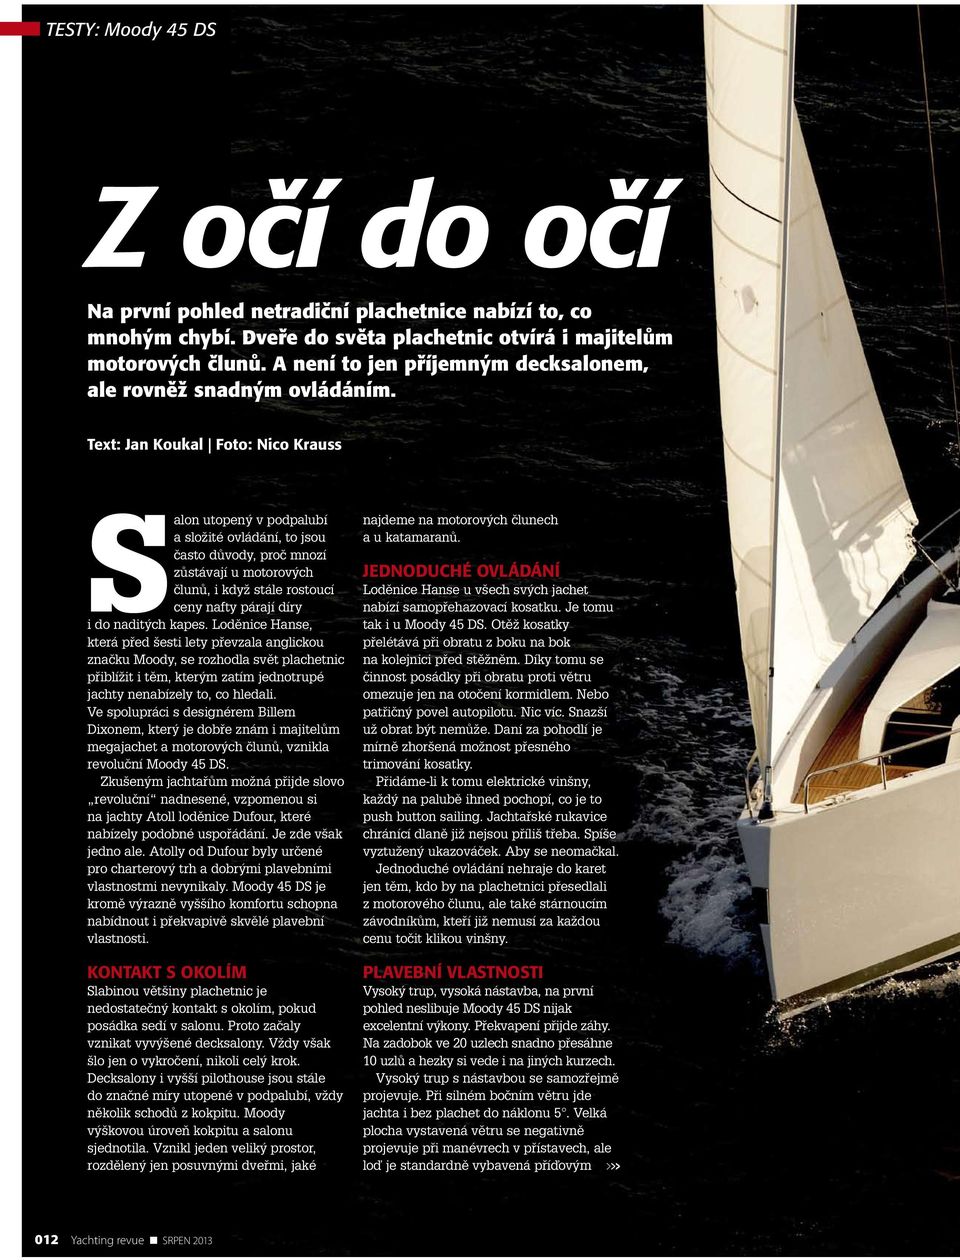 Text: Jan Koukal Foto: Nico Krauss Salon utopený v podpalubí a složité ovládání, to jsou často důvody, proč mnozí zůstávají u motorových člunů, i když stále rostoucí ceny nafty párají díry i do